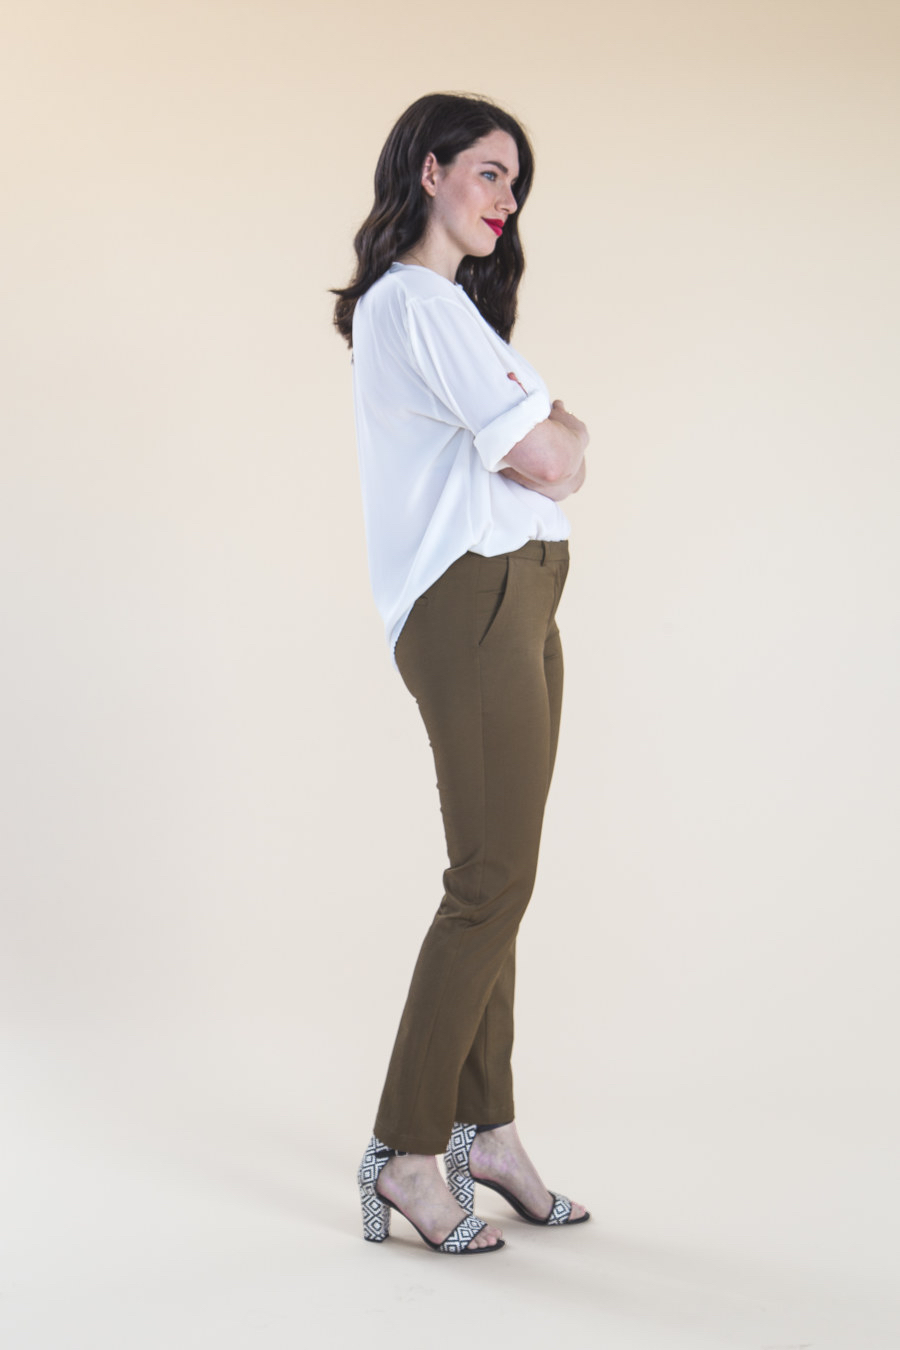 Closet Core Patterns : Sasha Trousers Pattern